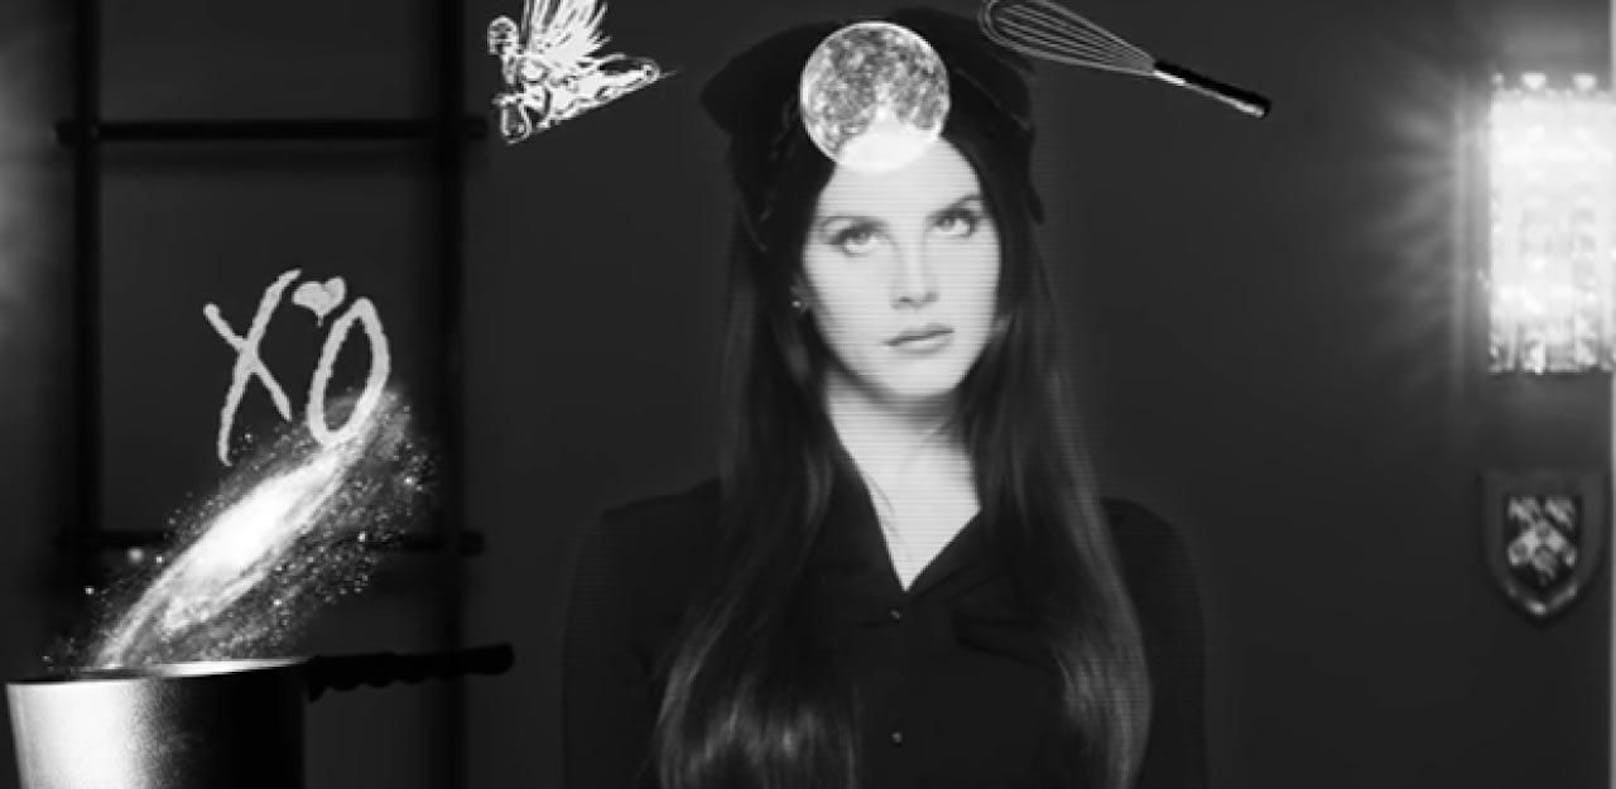 Lana Del Rey - Verhexter Trailer für neues Album